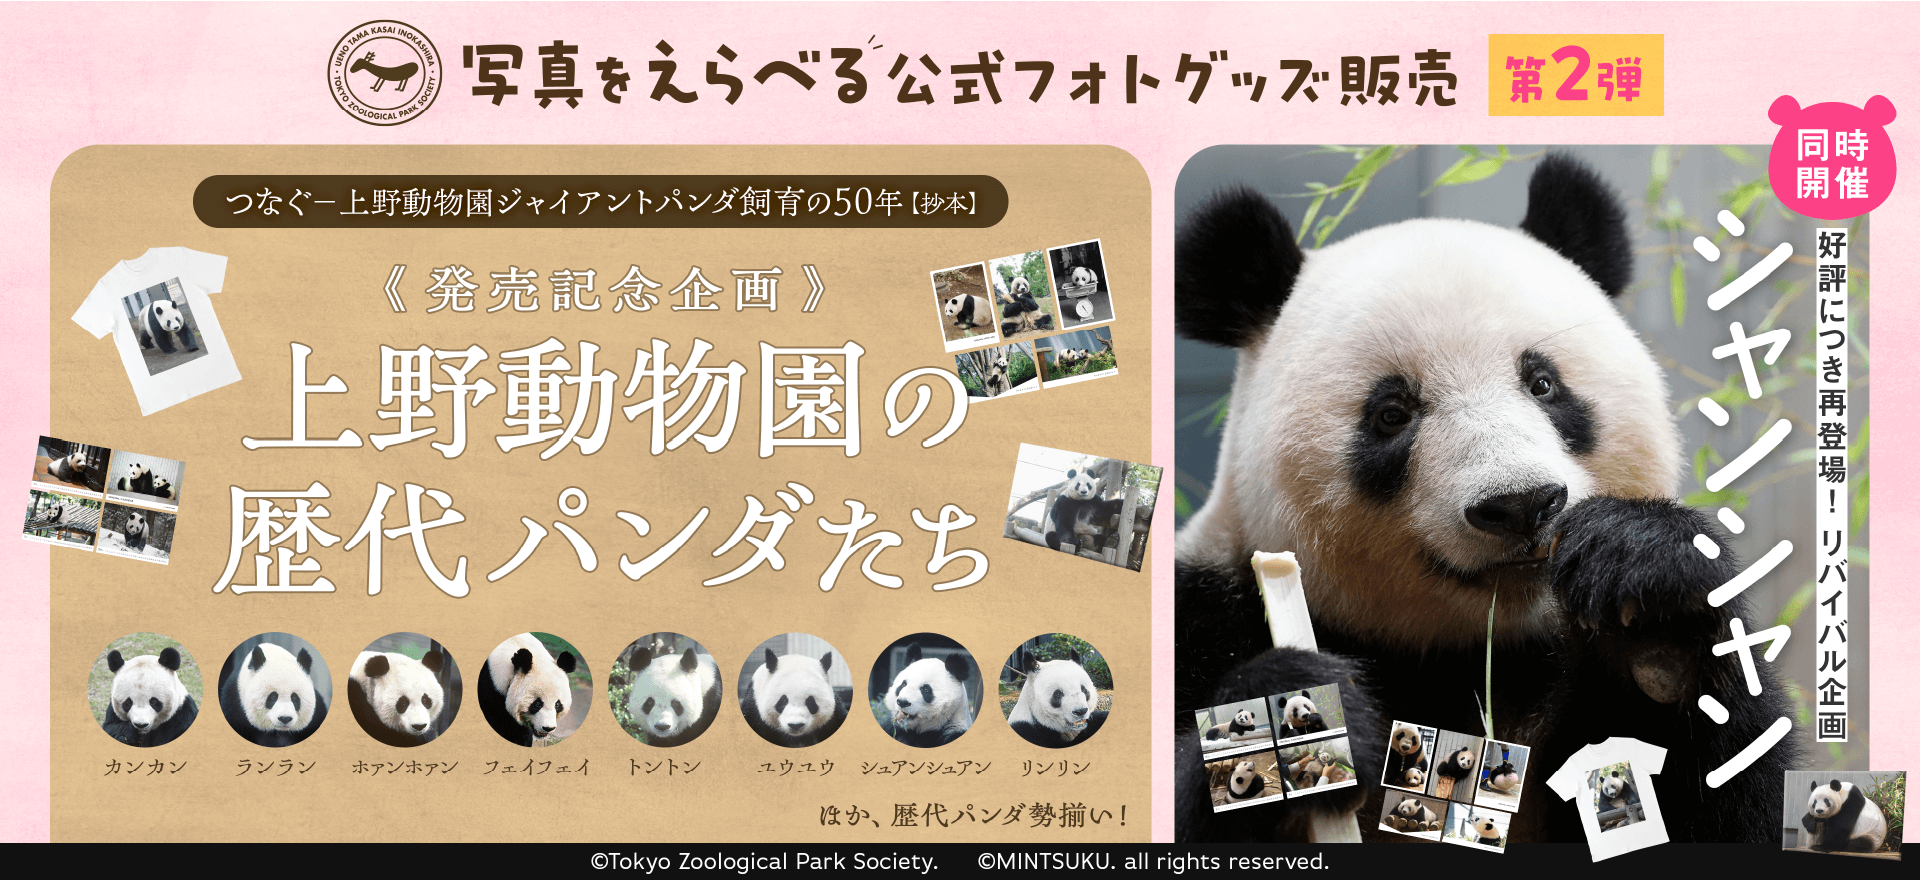 シャンシャン 上野動物園 パンダ 写真集 すくすく、シャンシャン 